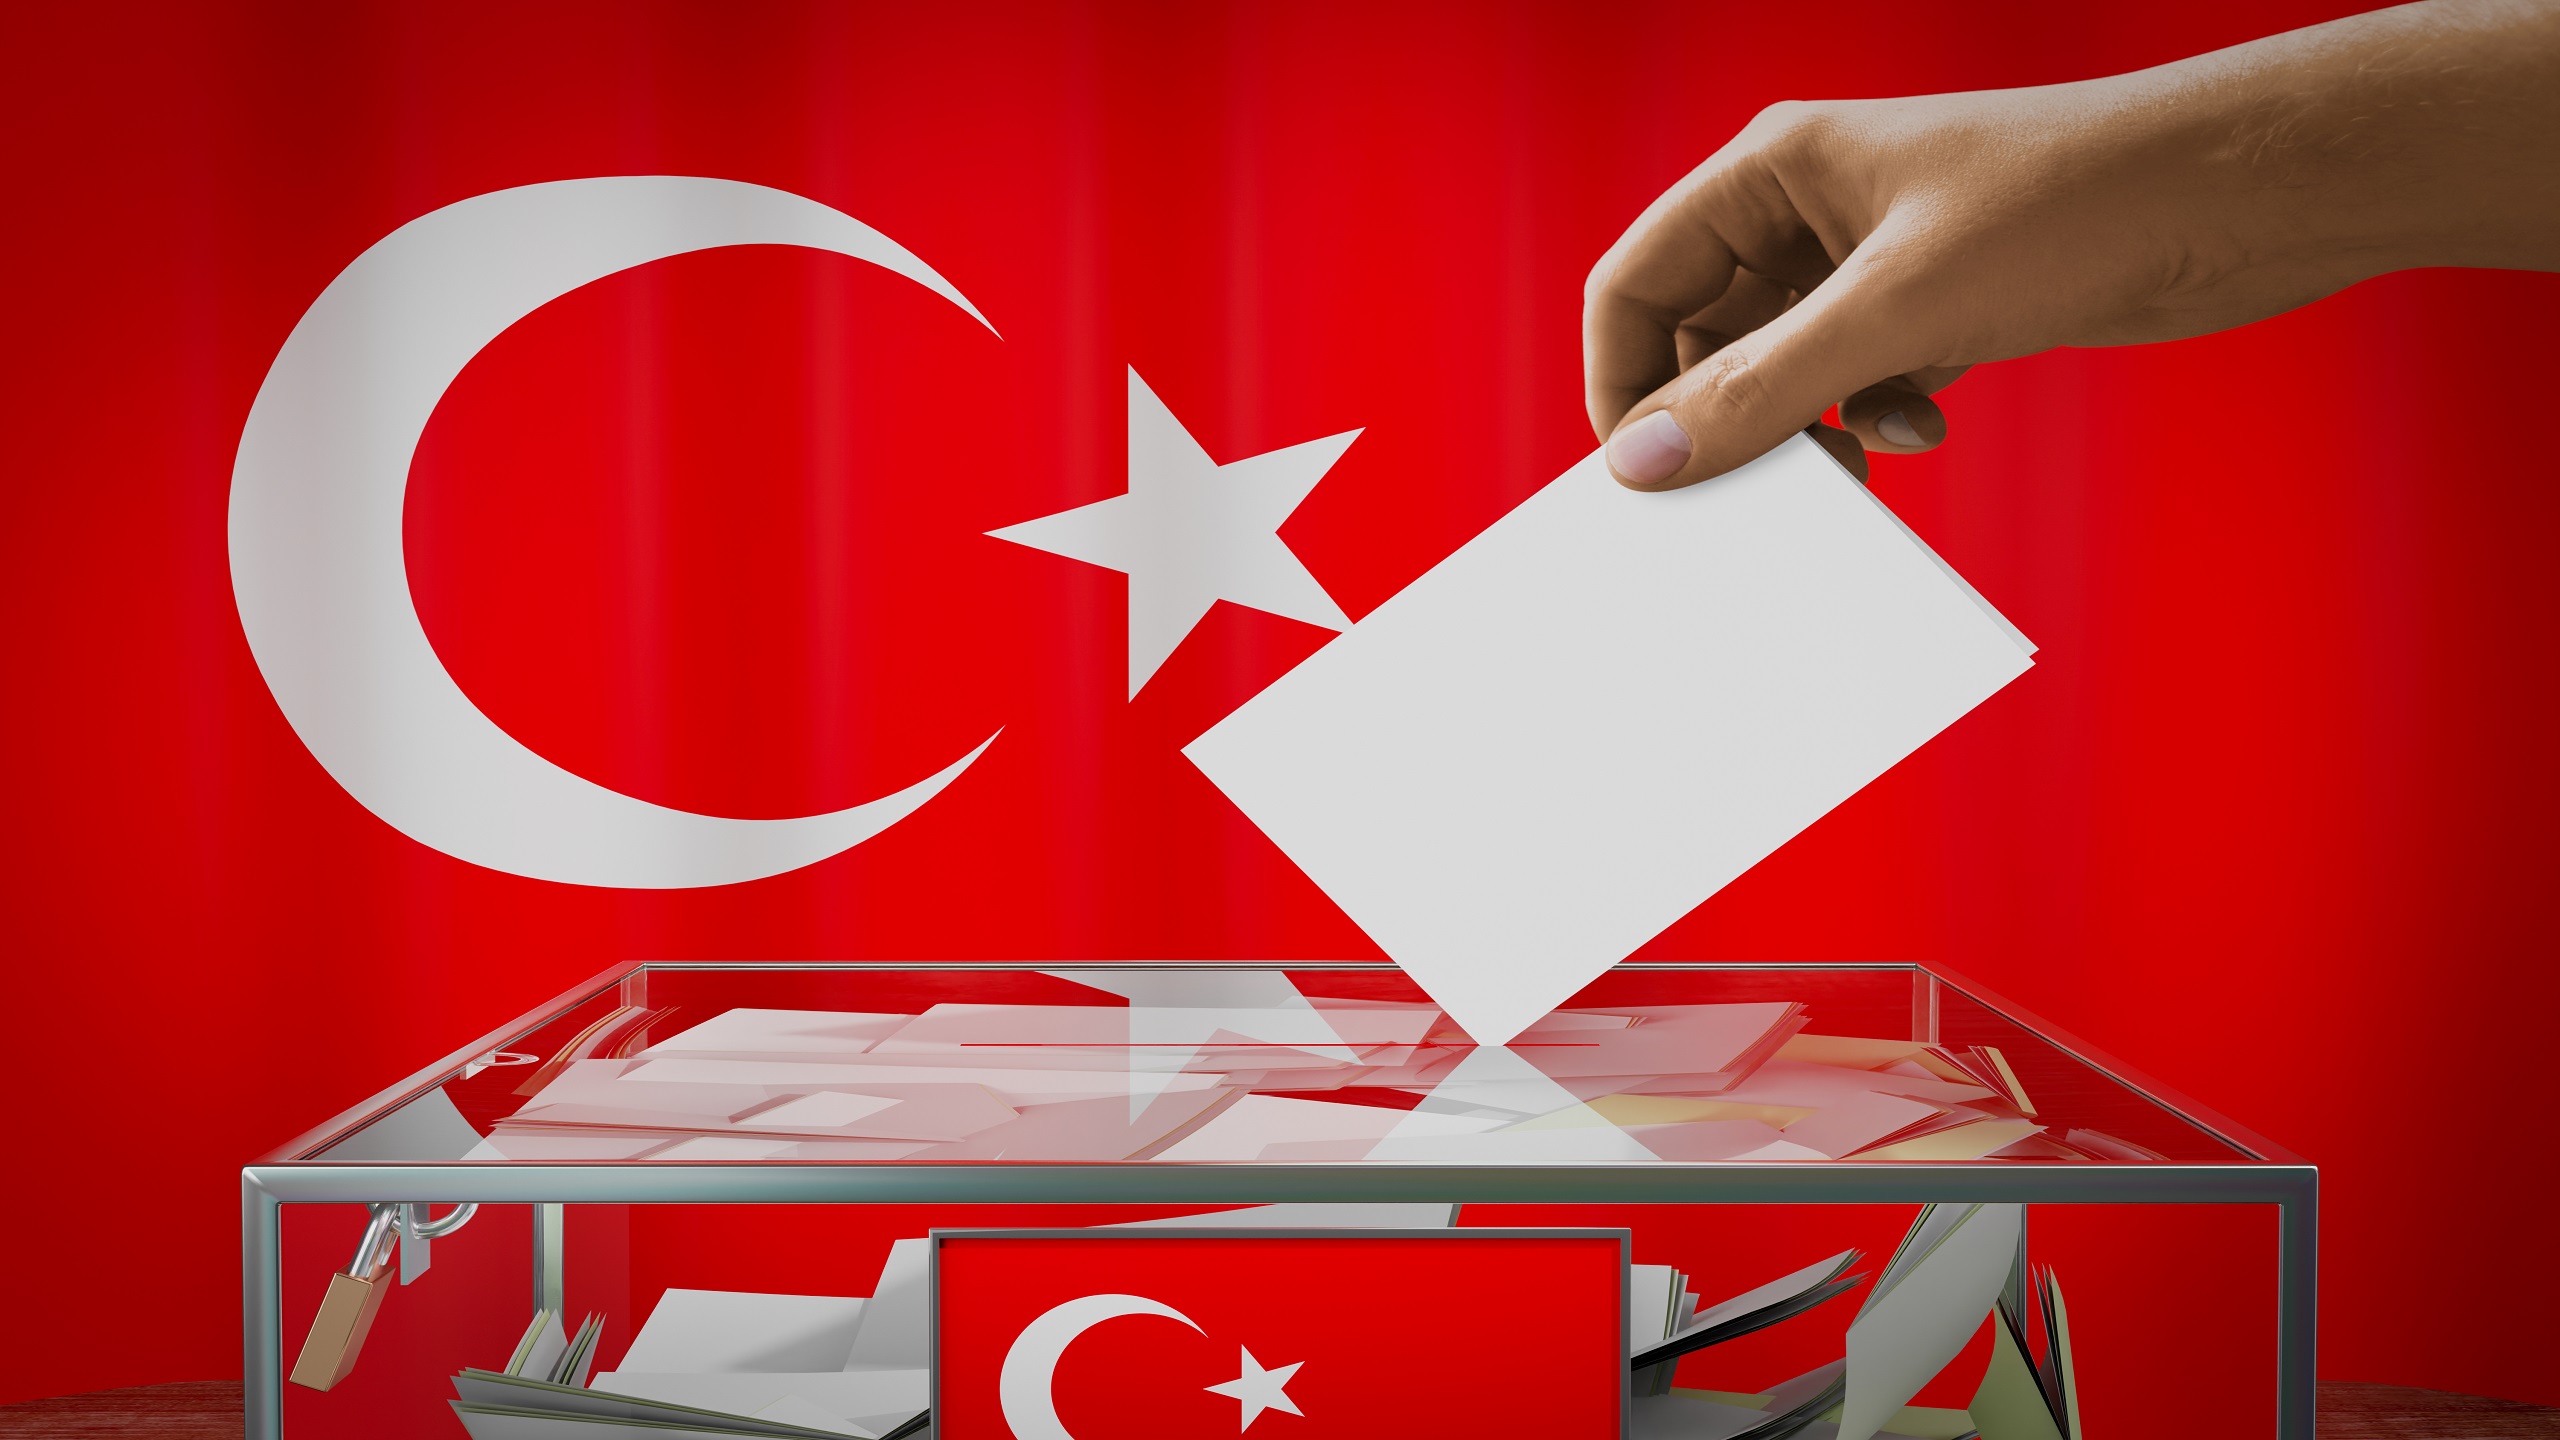 Kılıçdaroğlu Rises in Turkey's Election Race Against Erdoğan The